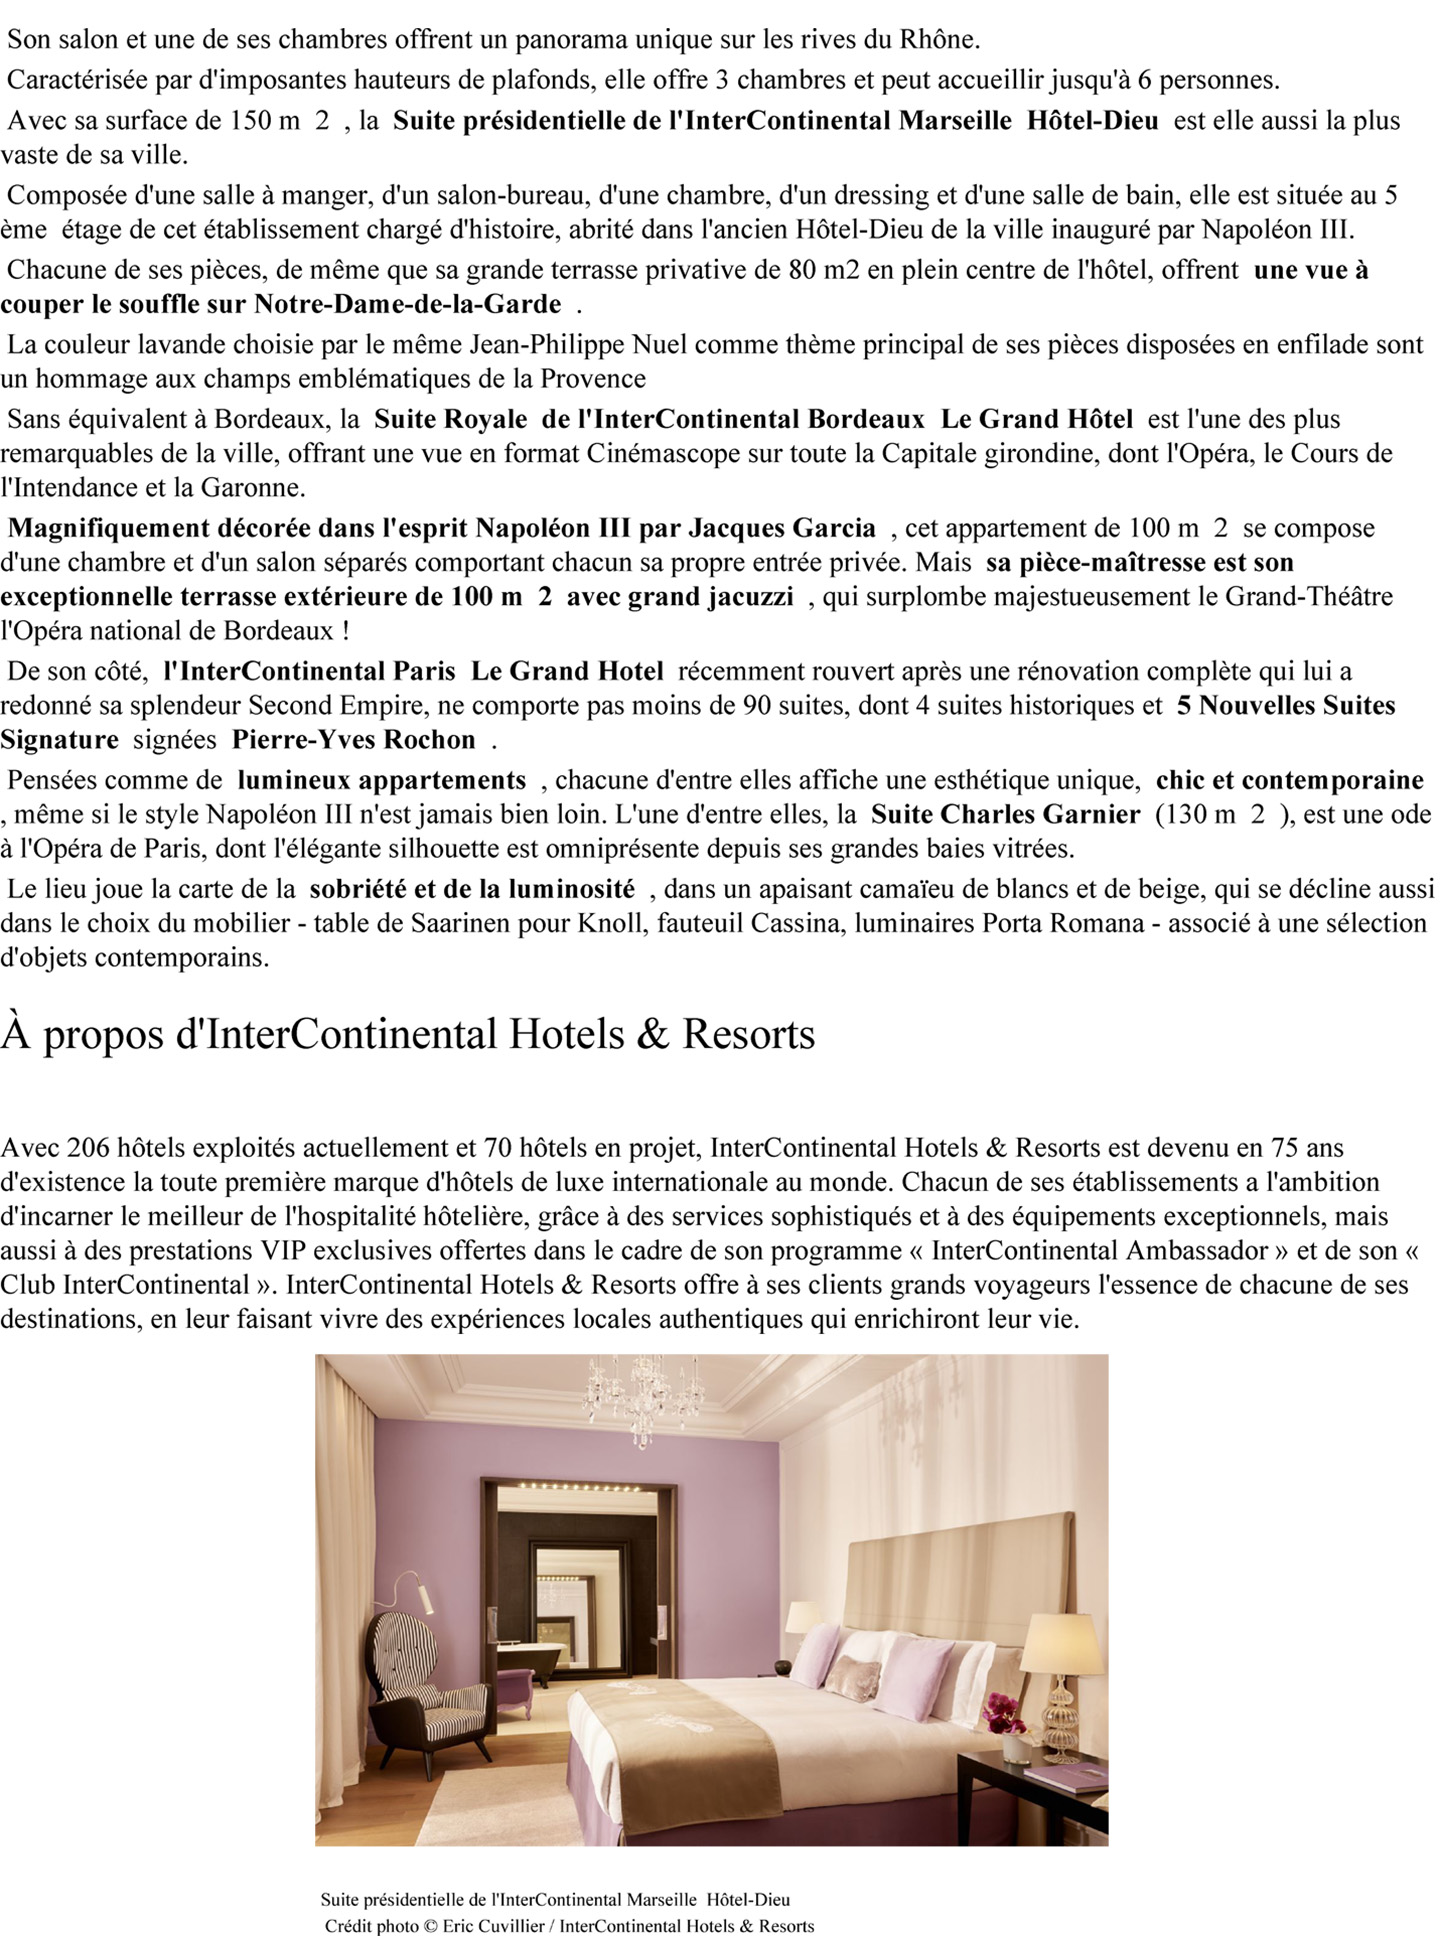 article sur la collaboration entre le studio jean-phiippe nuel et InterContinental pour la rénovation de plusieurs hôtels dieu et leur transformation en hotel de luxe 5 étoiles